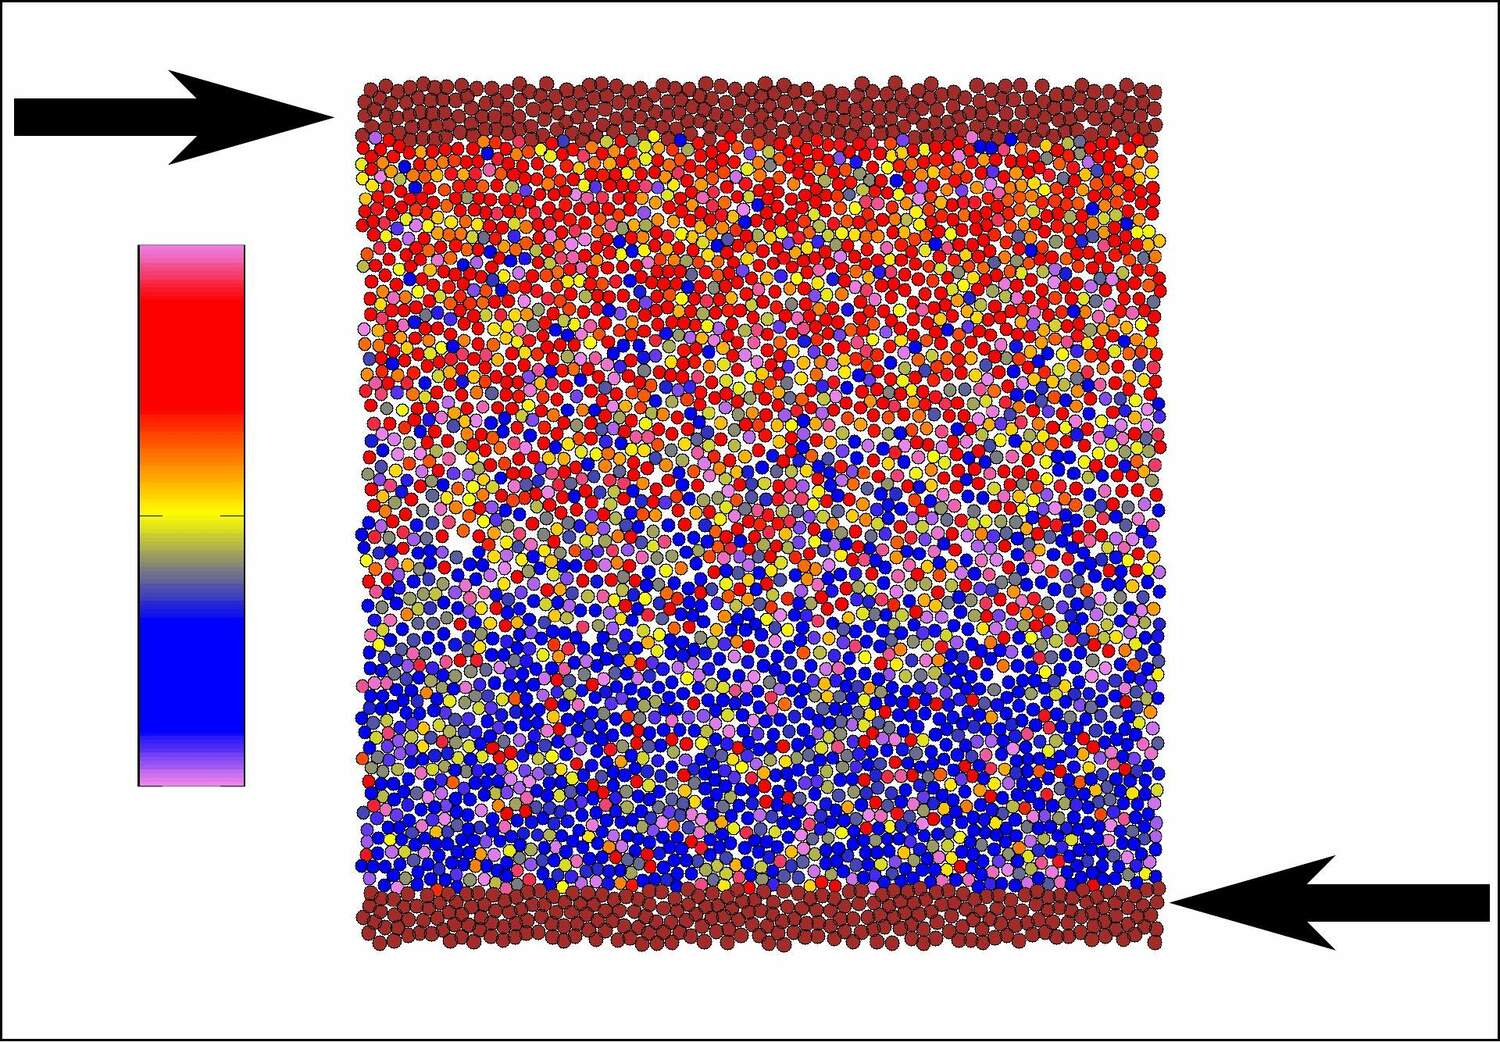 Ein Schnappschuss aus der Simulation der Forscher. Die Farben zeigen die Ausrichtung der Selbstantriebskräfte an, zum Beispiel blau für abwärts und rot für aufwärts; benachbarte Partikel scheinen tendenziell in ähnliche Richtungen orientiert zu sein.